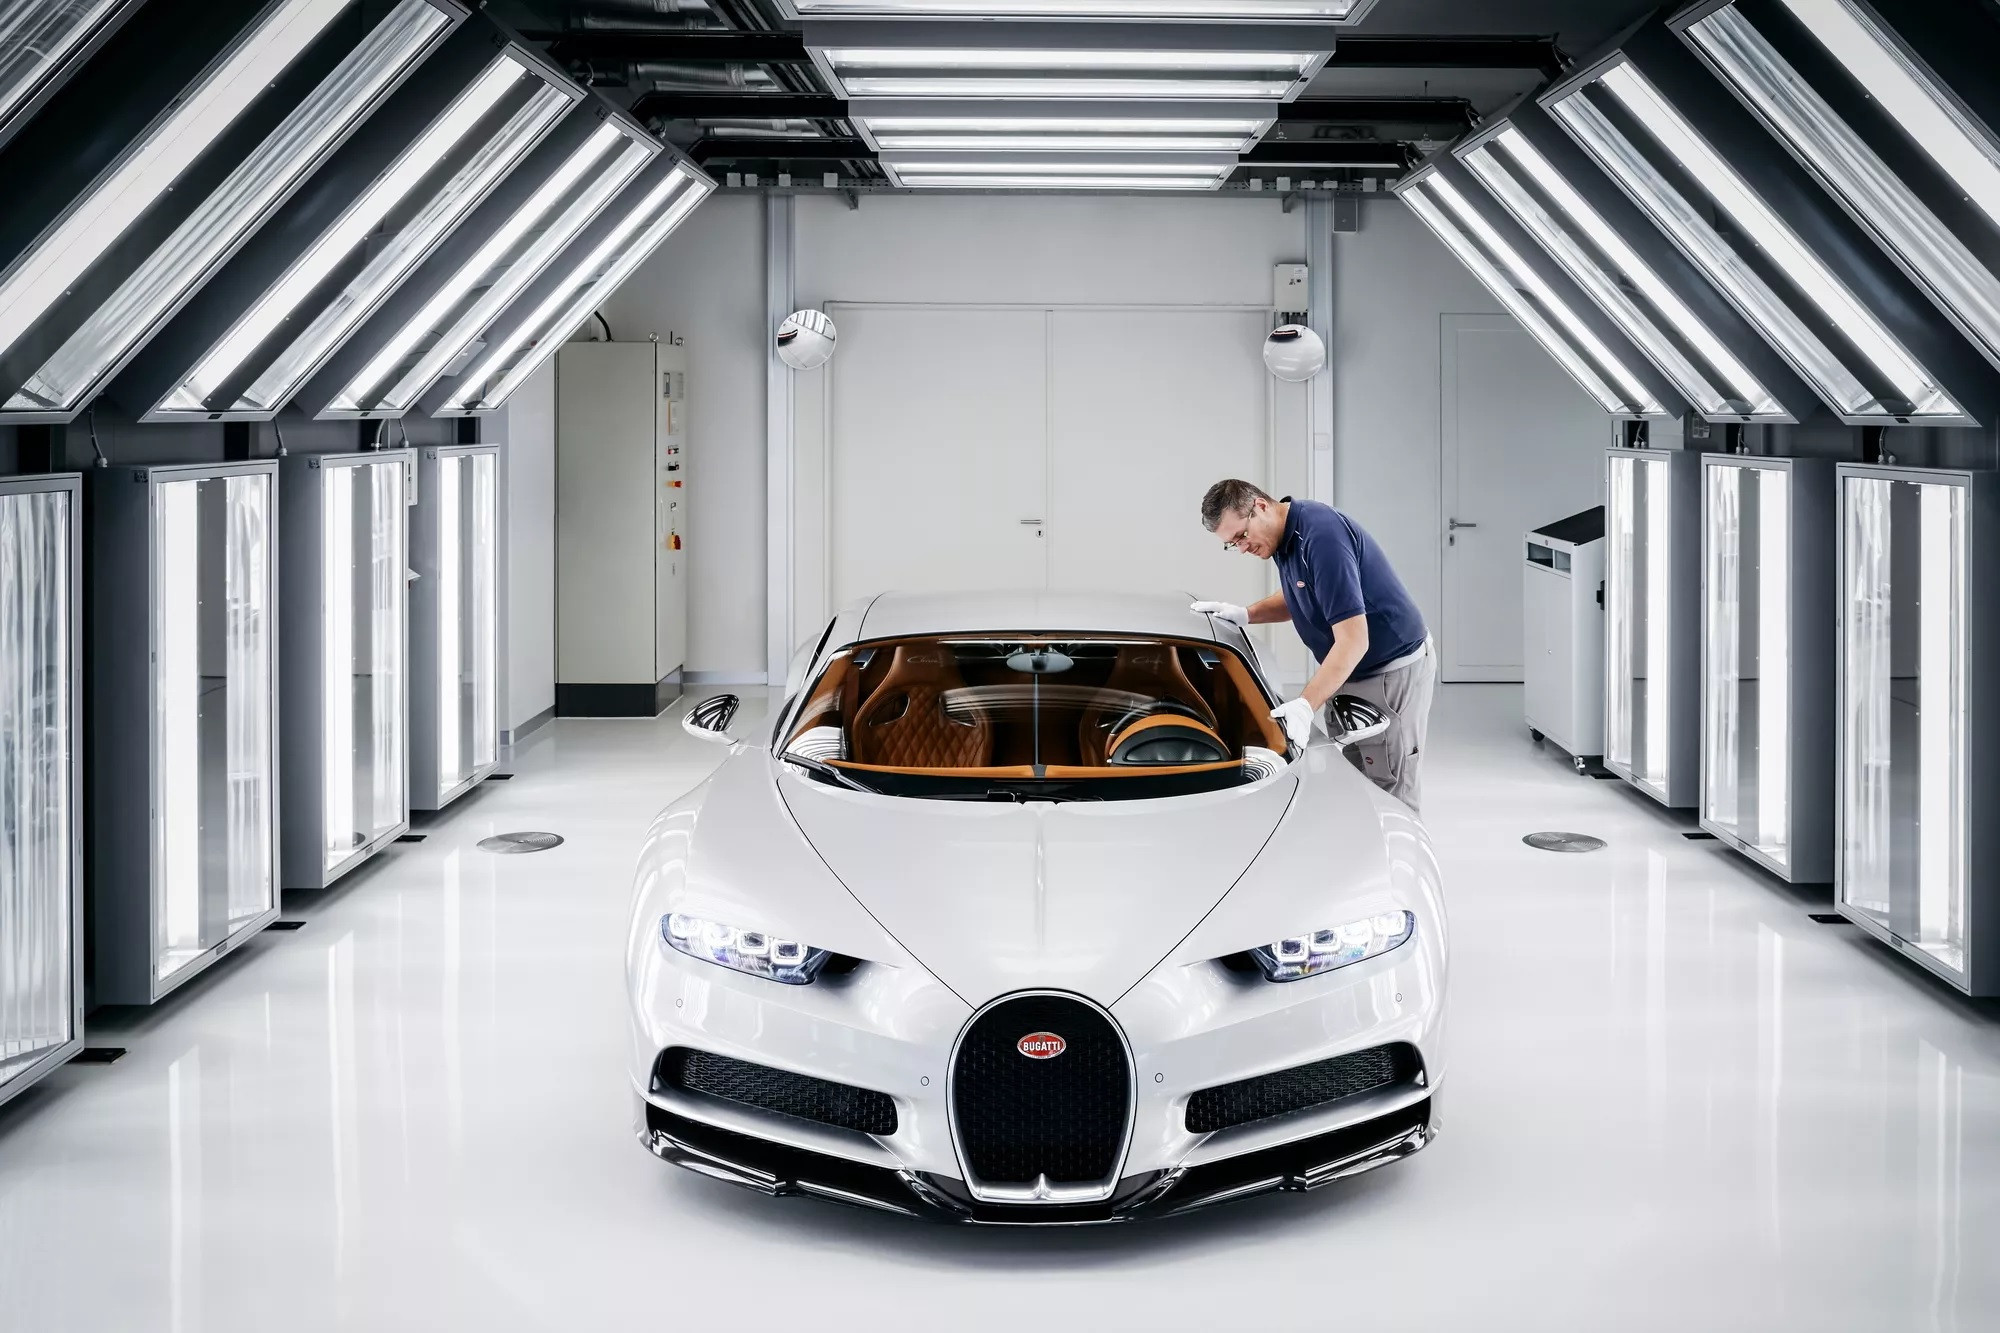 Lý do xe của Bugatti luôn đắt: riêng sơn thân xe tốn đến 700 giờ